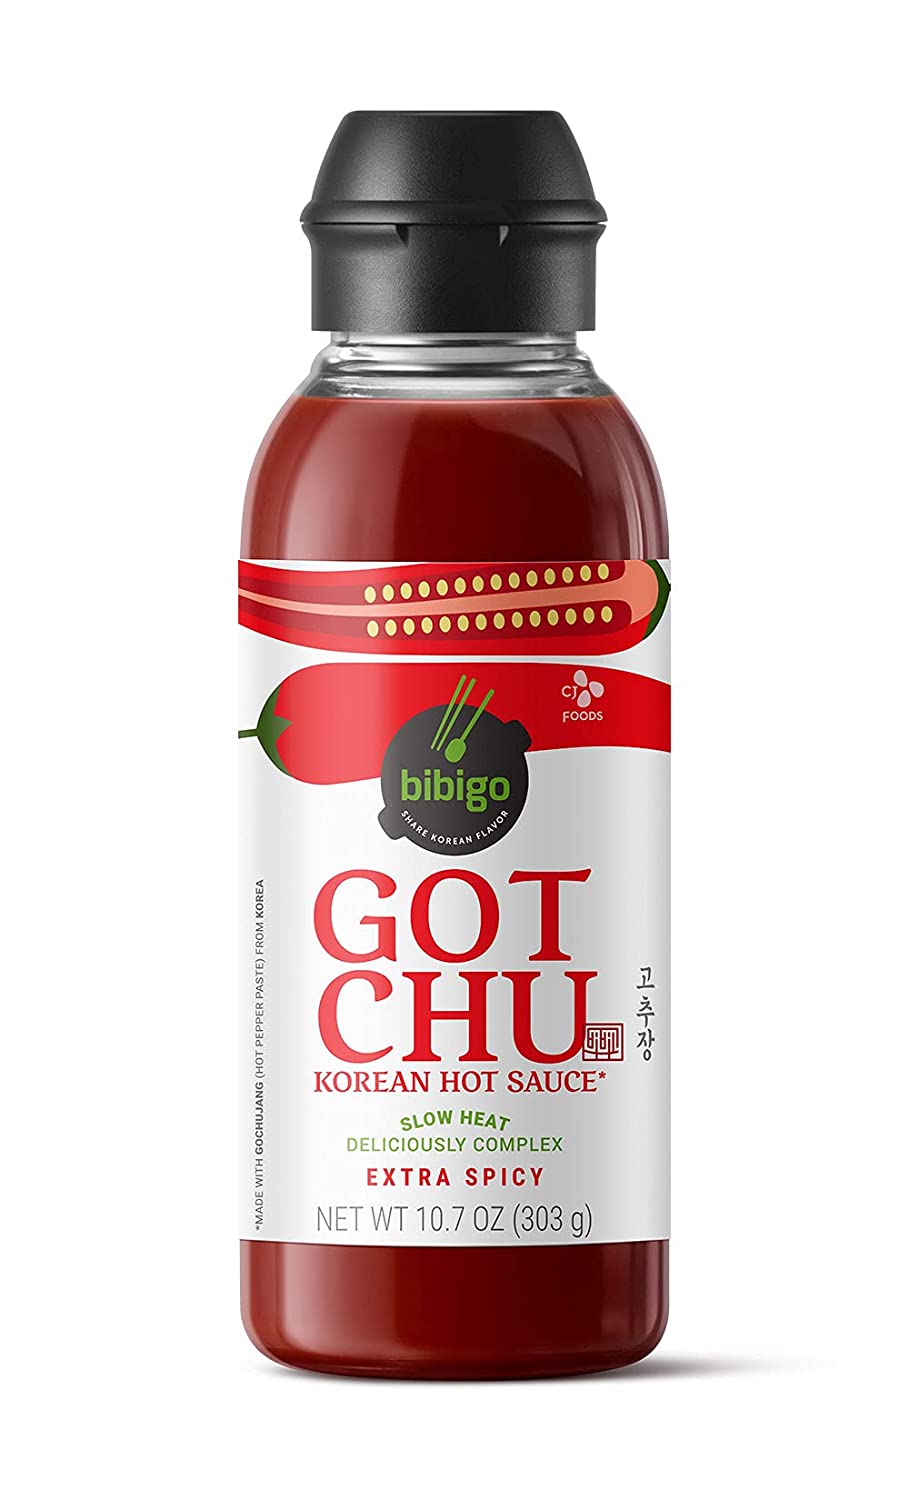 bibigo GOTCHU Korean Hot Sauce, Extra Spicy, 10.7-oz $1.94 with s/s